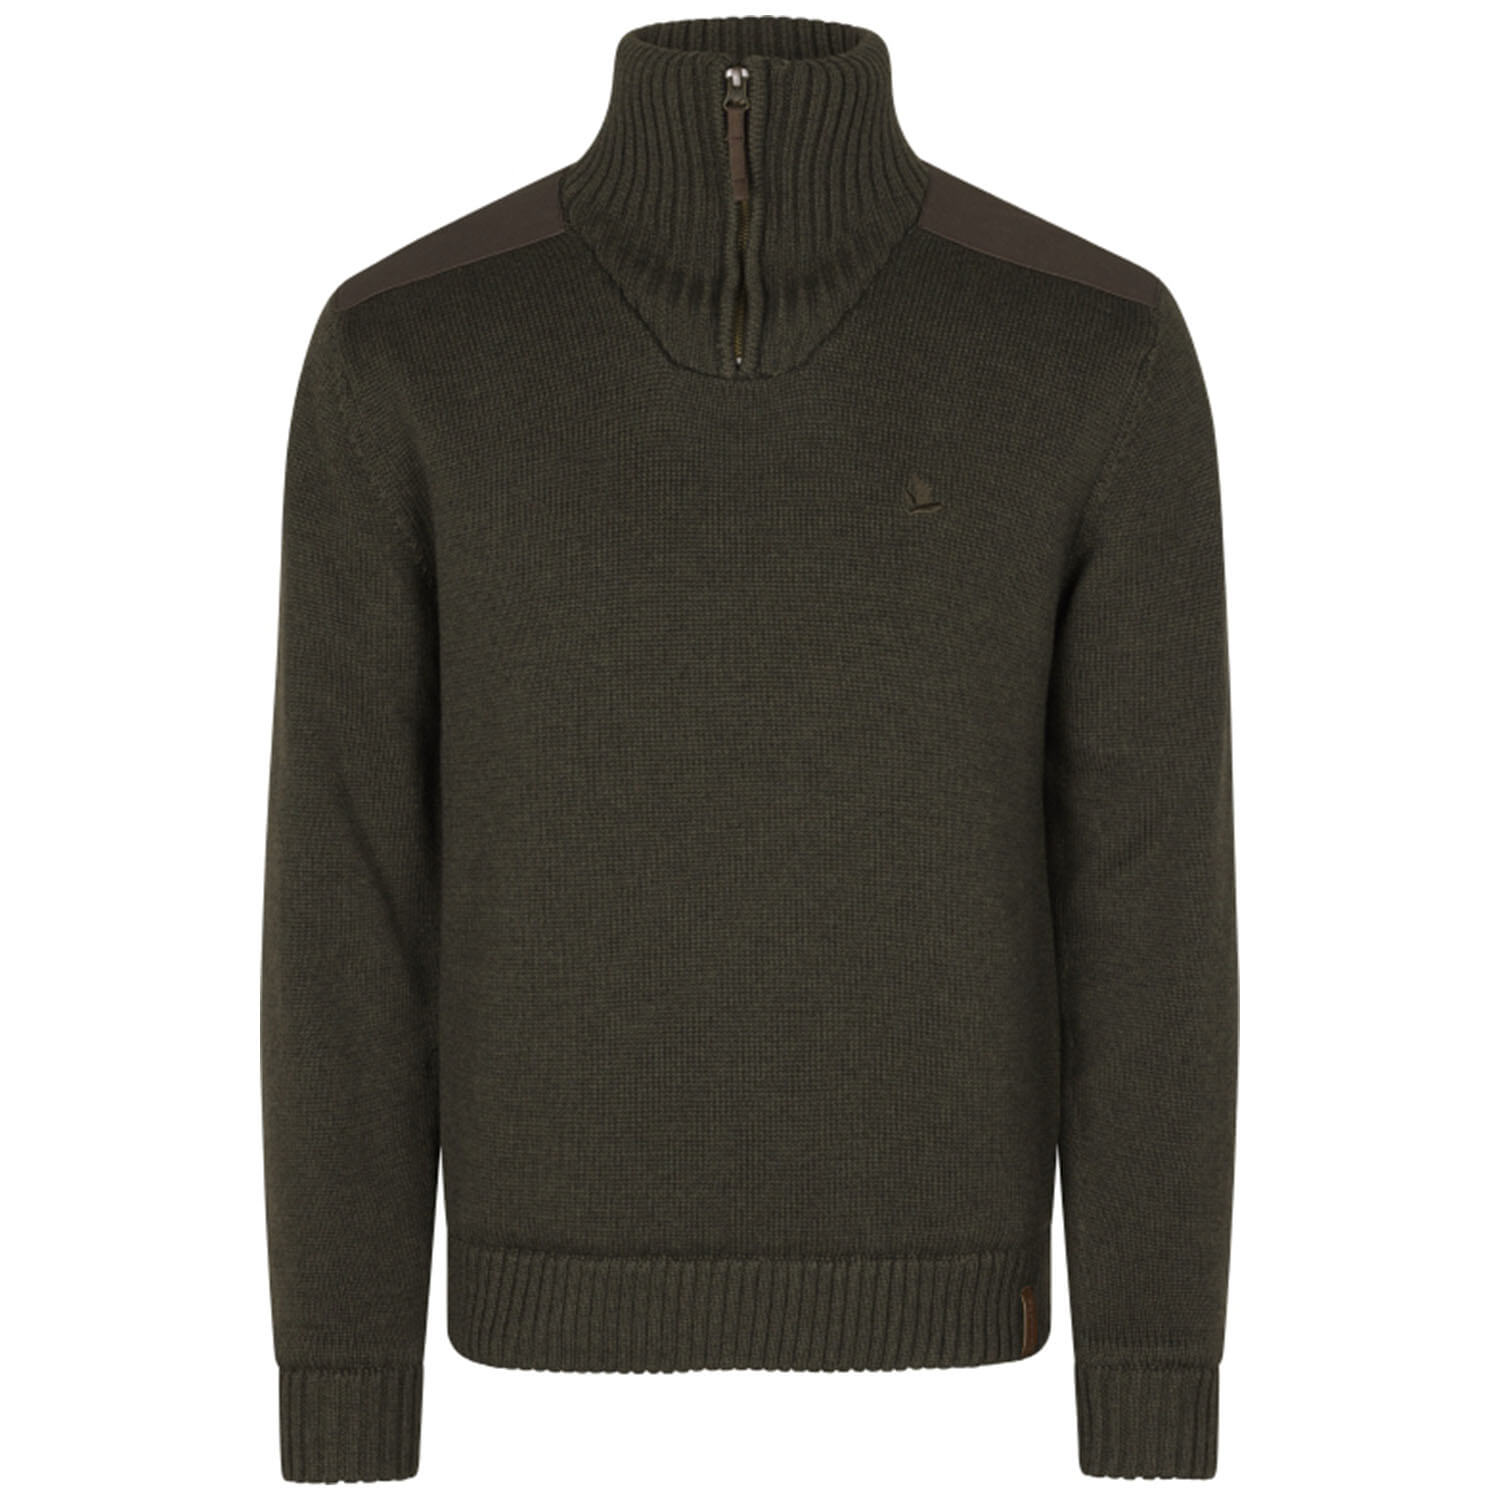 Seeland knit pullover haze windbreaker (Grizzly Brown) - Sweaters & Jerseys